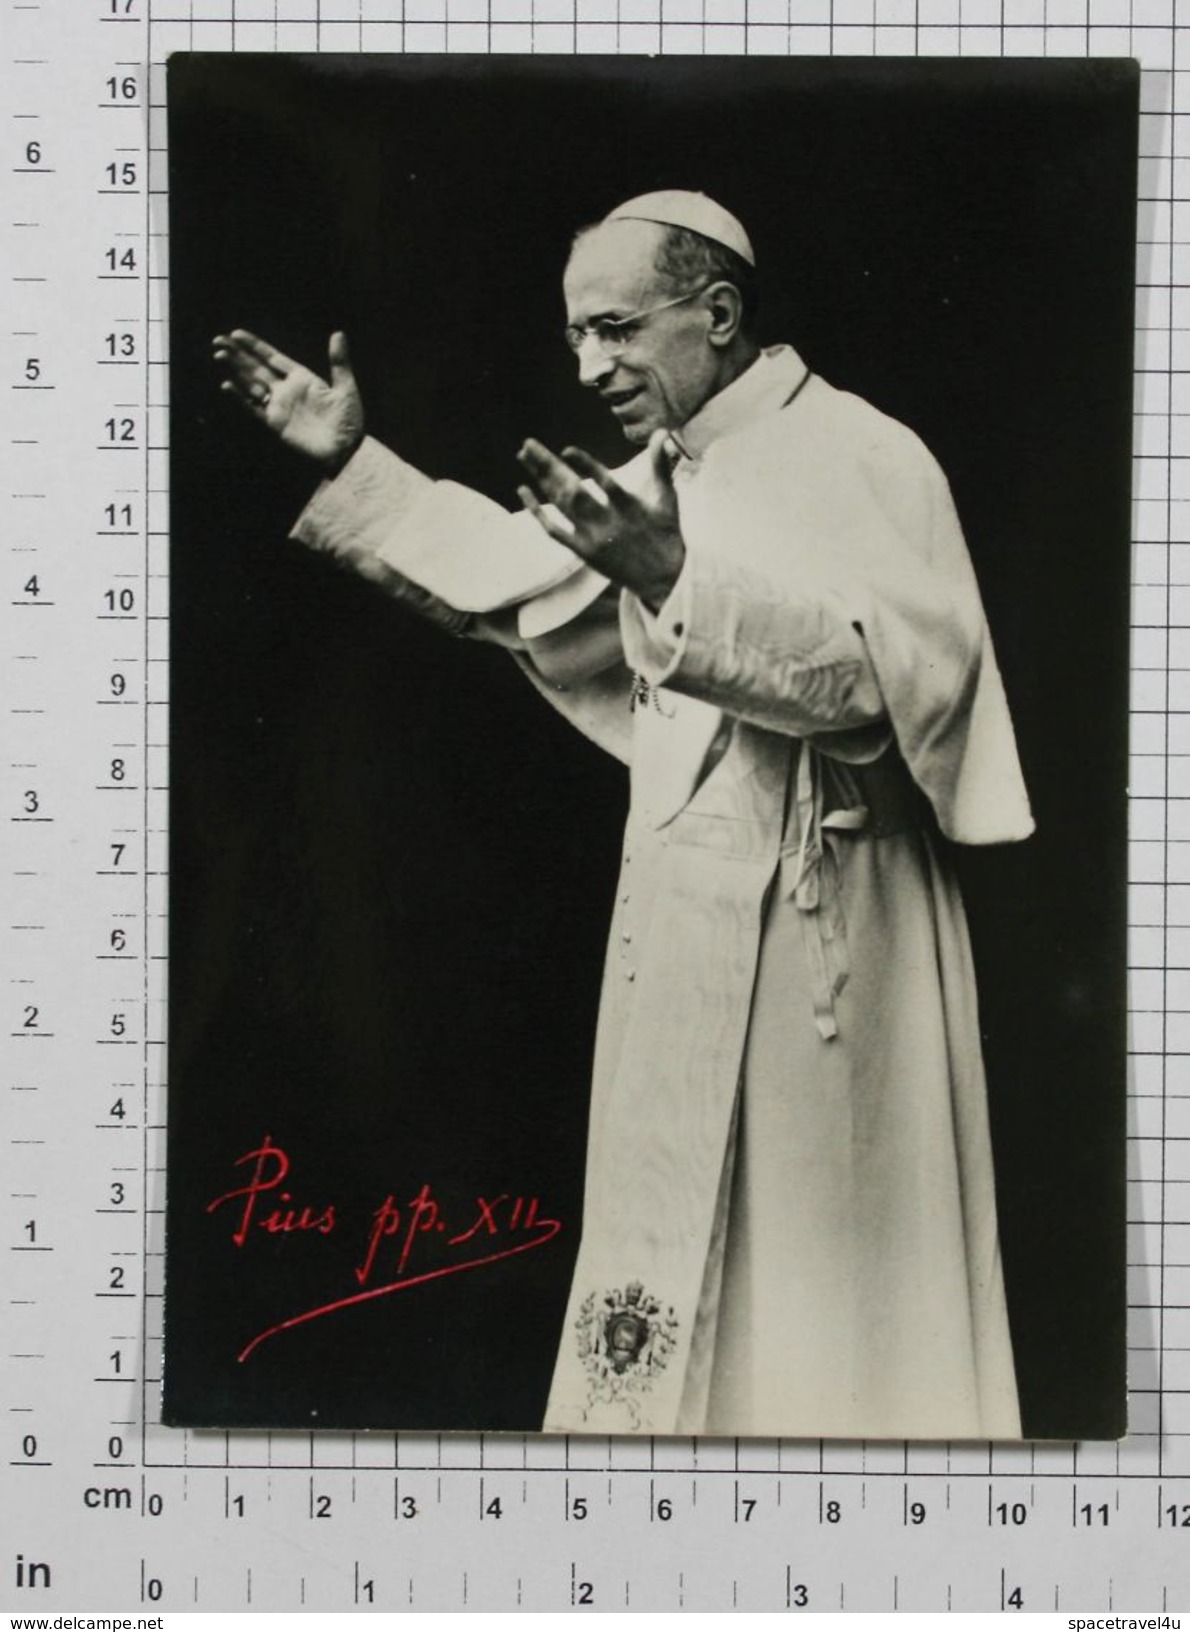 POPE PIUS XII (Eugenio Maria Giuseppe) - Vintage PHOTO POSTCARD (181-A) - Popes